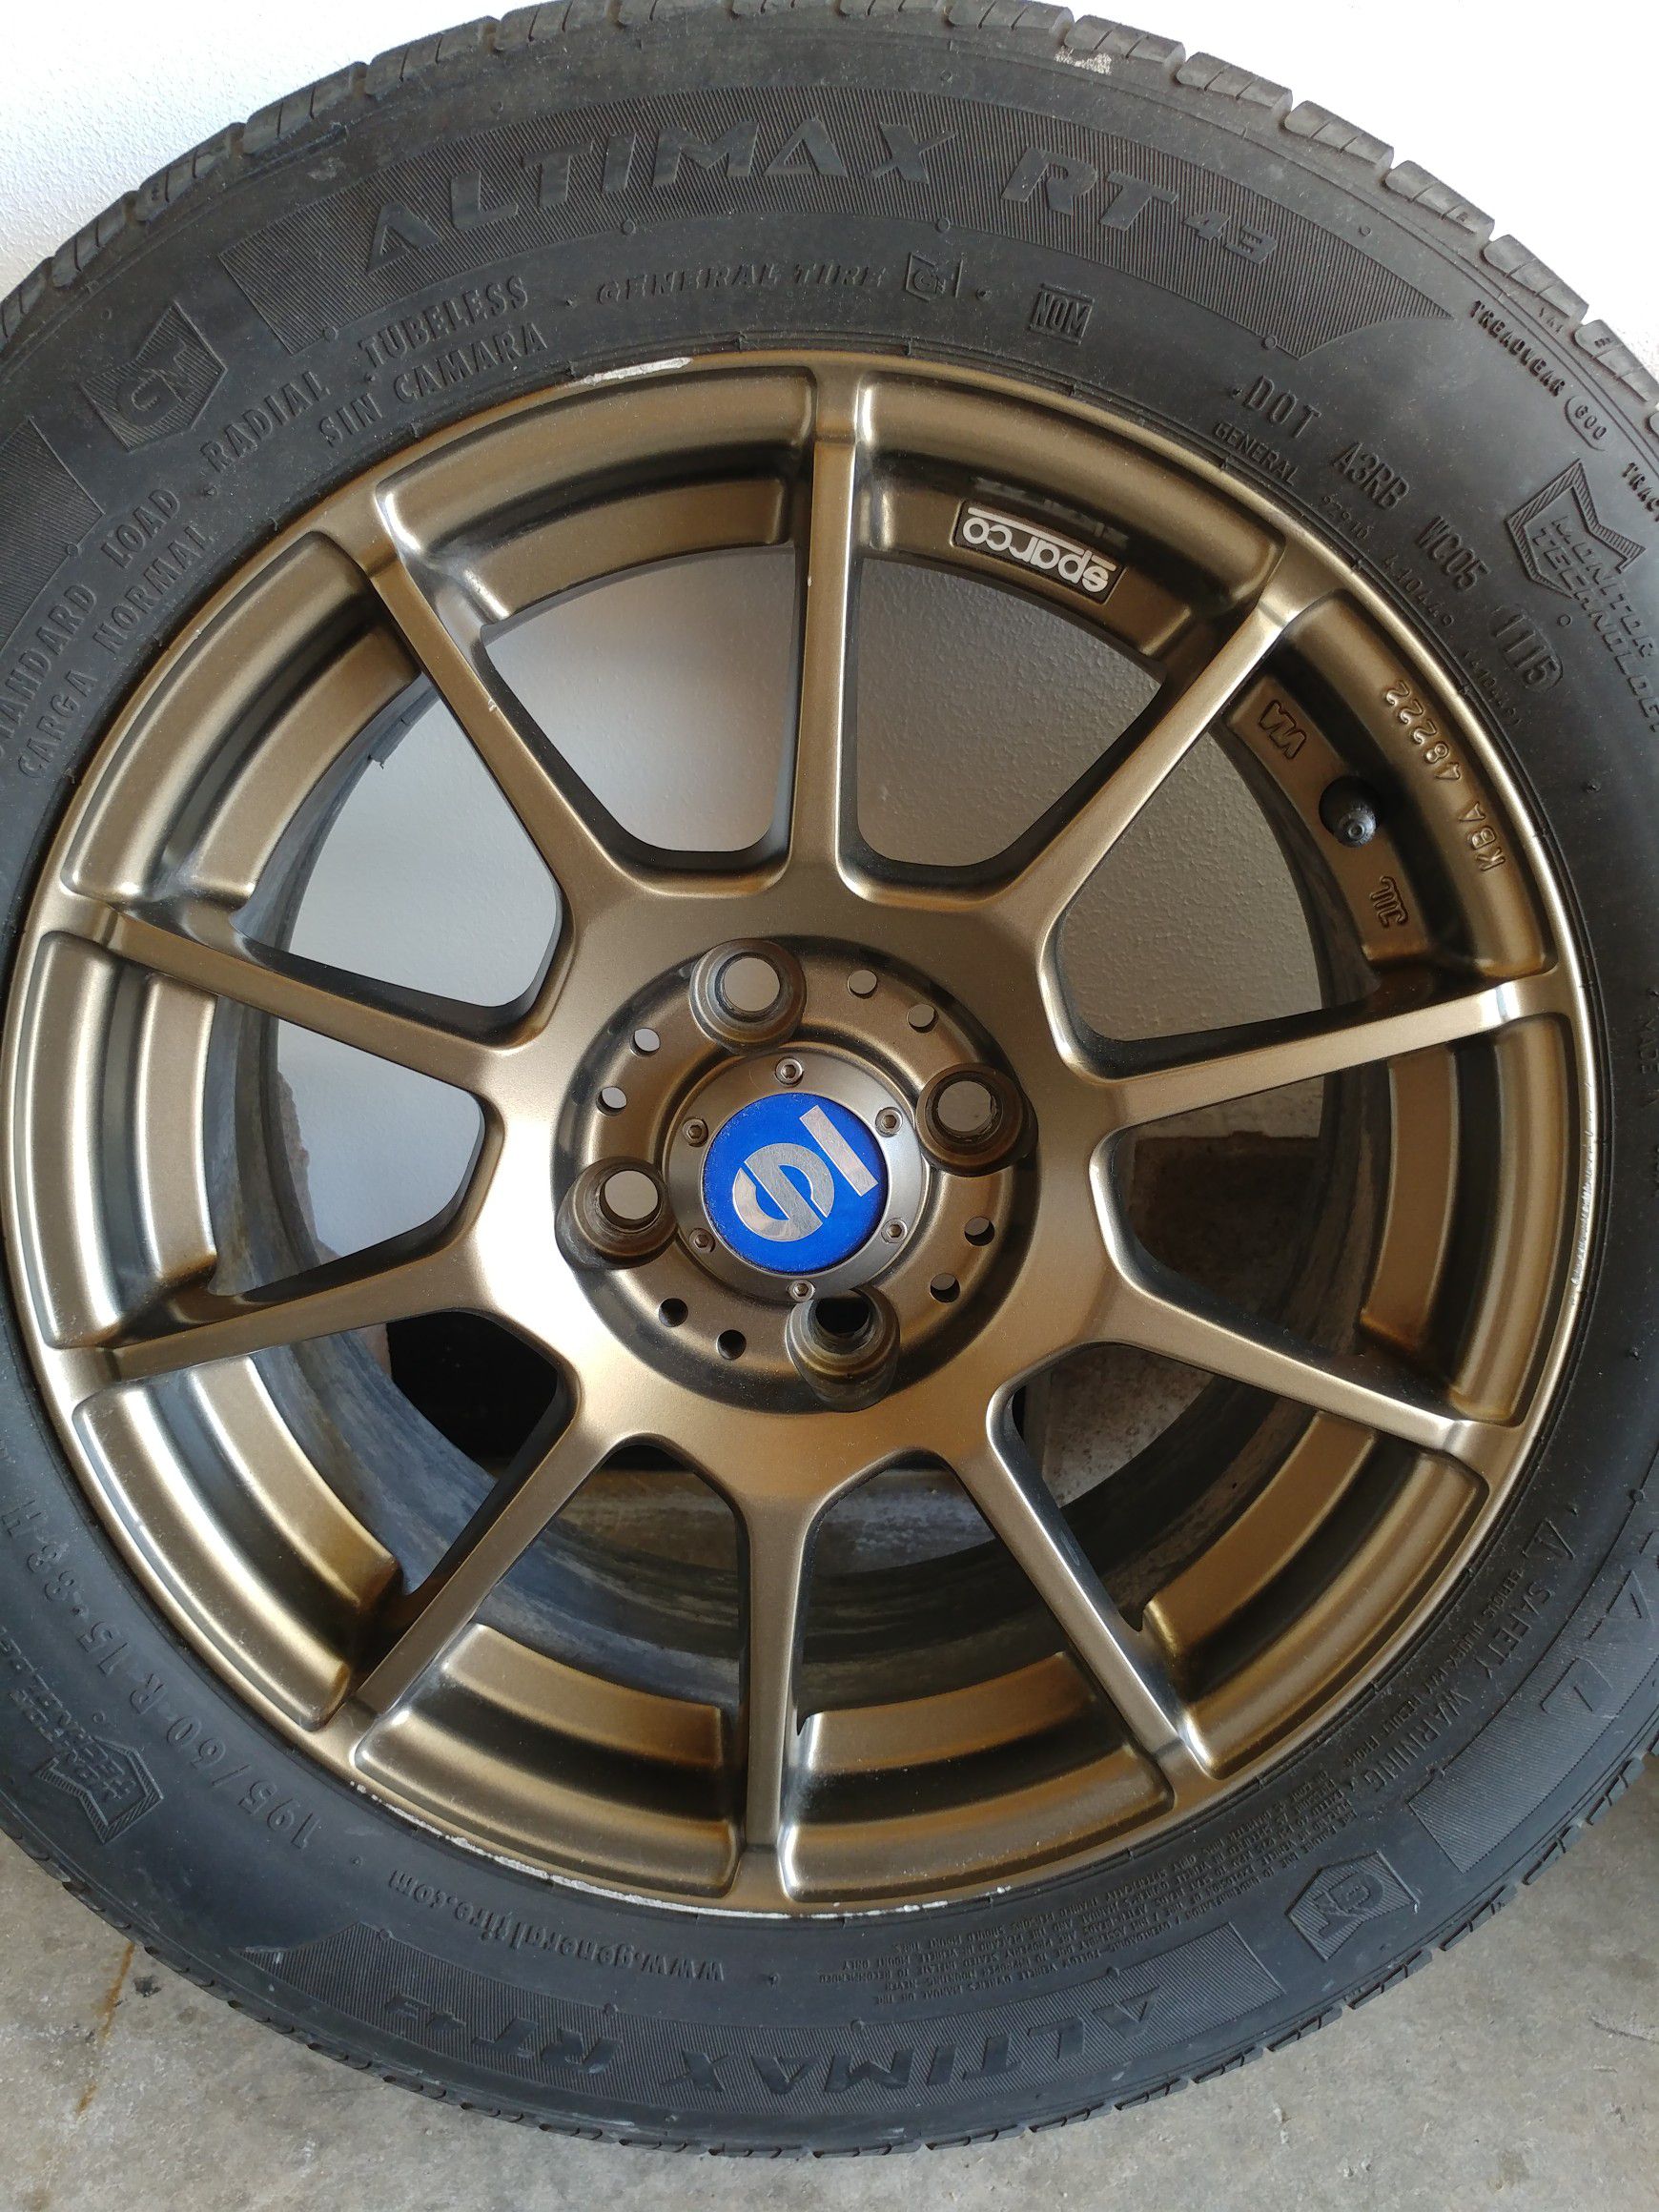 Hører til Cirkus Hvad er der galt 4 bronze wheels with tires for Sale in North Las Vegas, NV - OfferUp